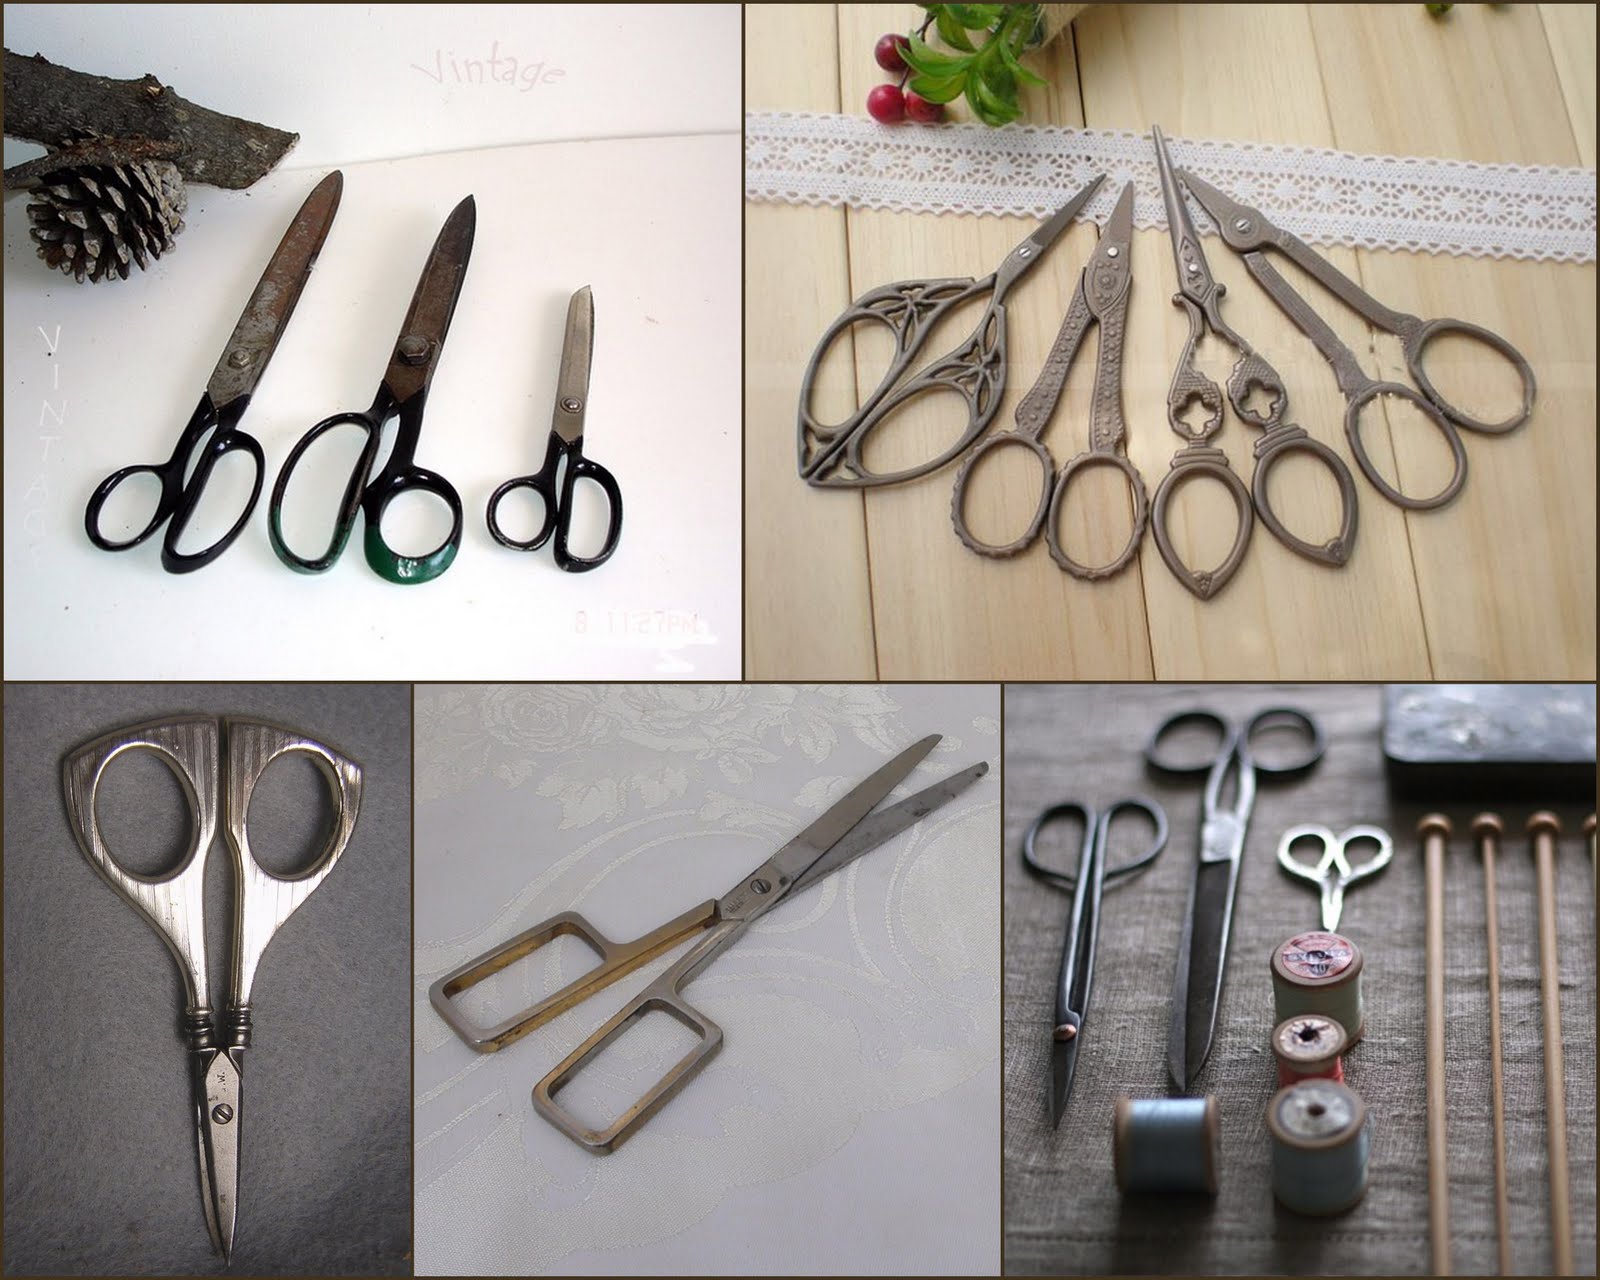 vintage sewing scissors